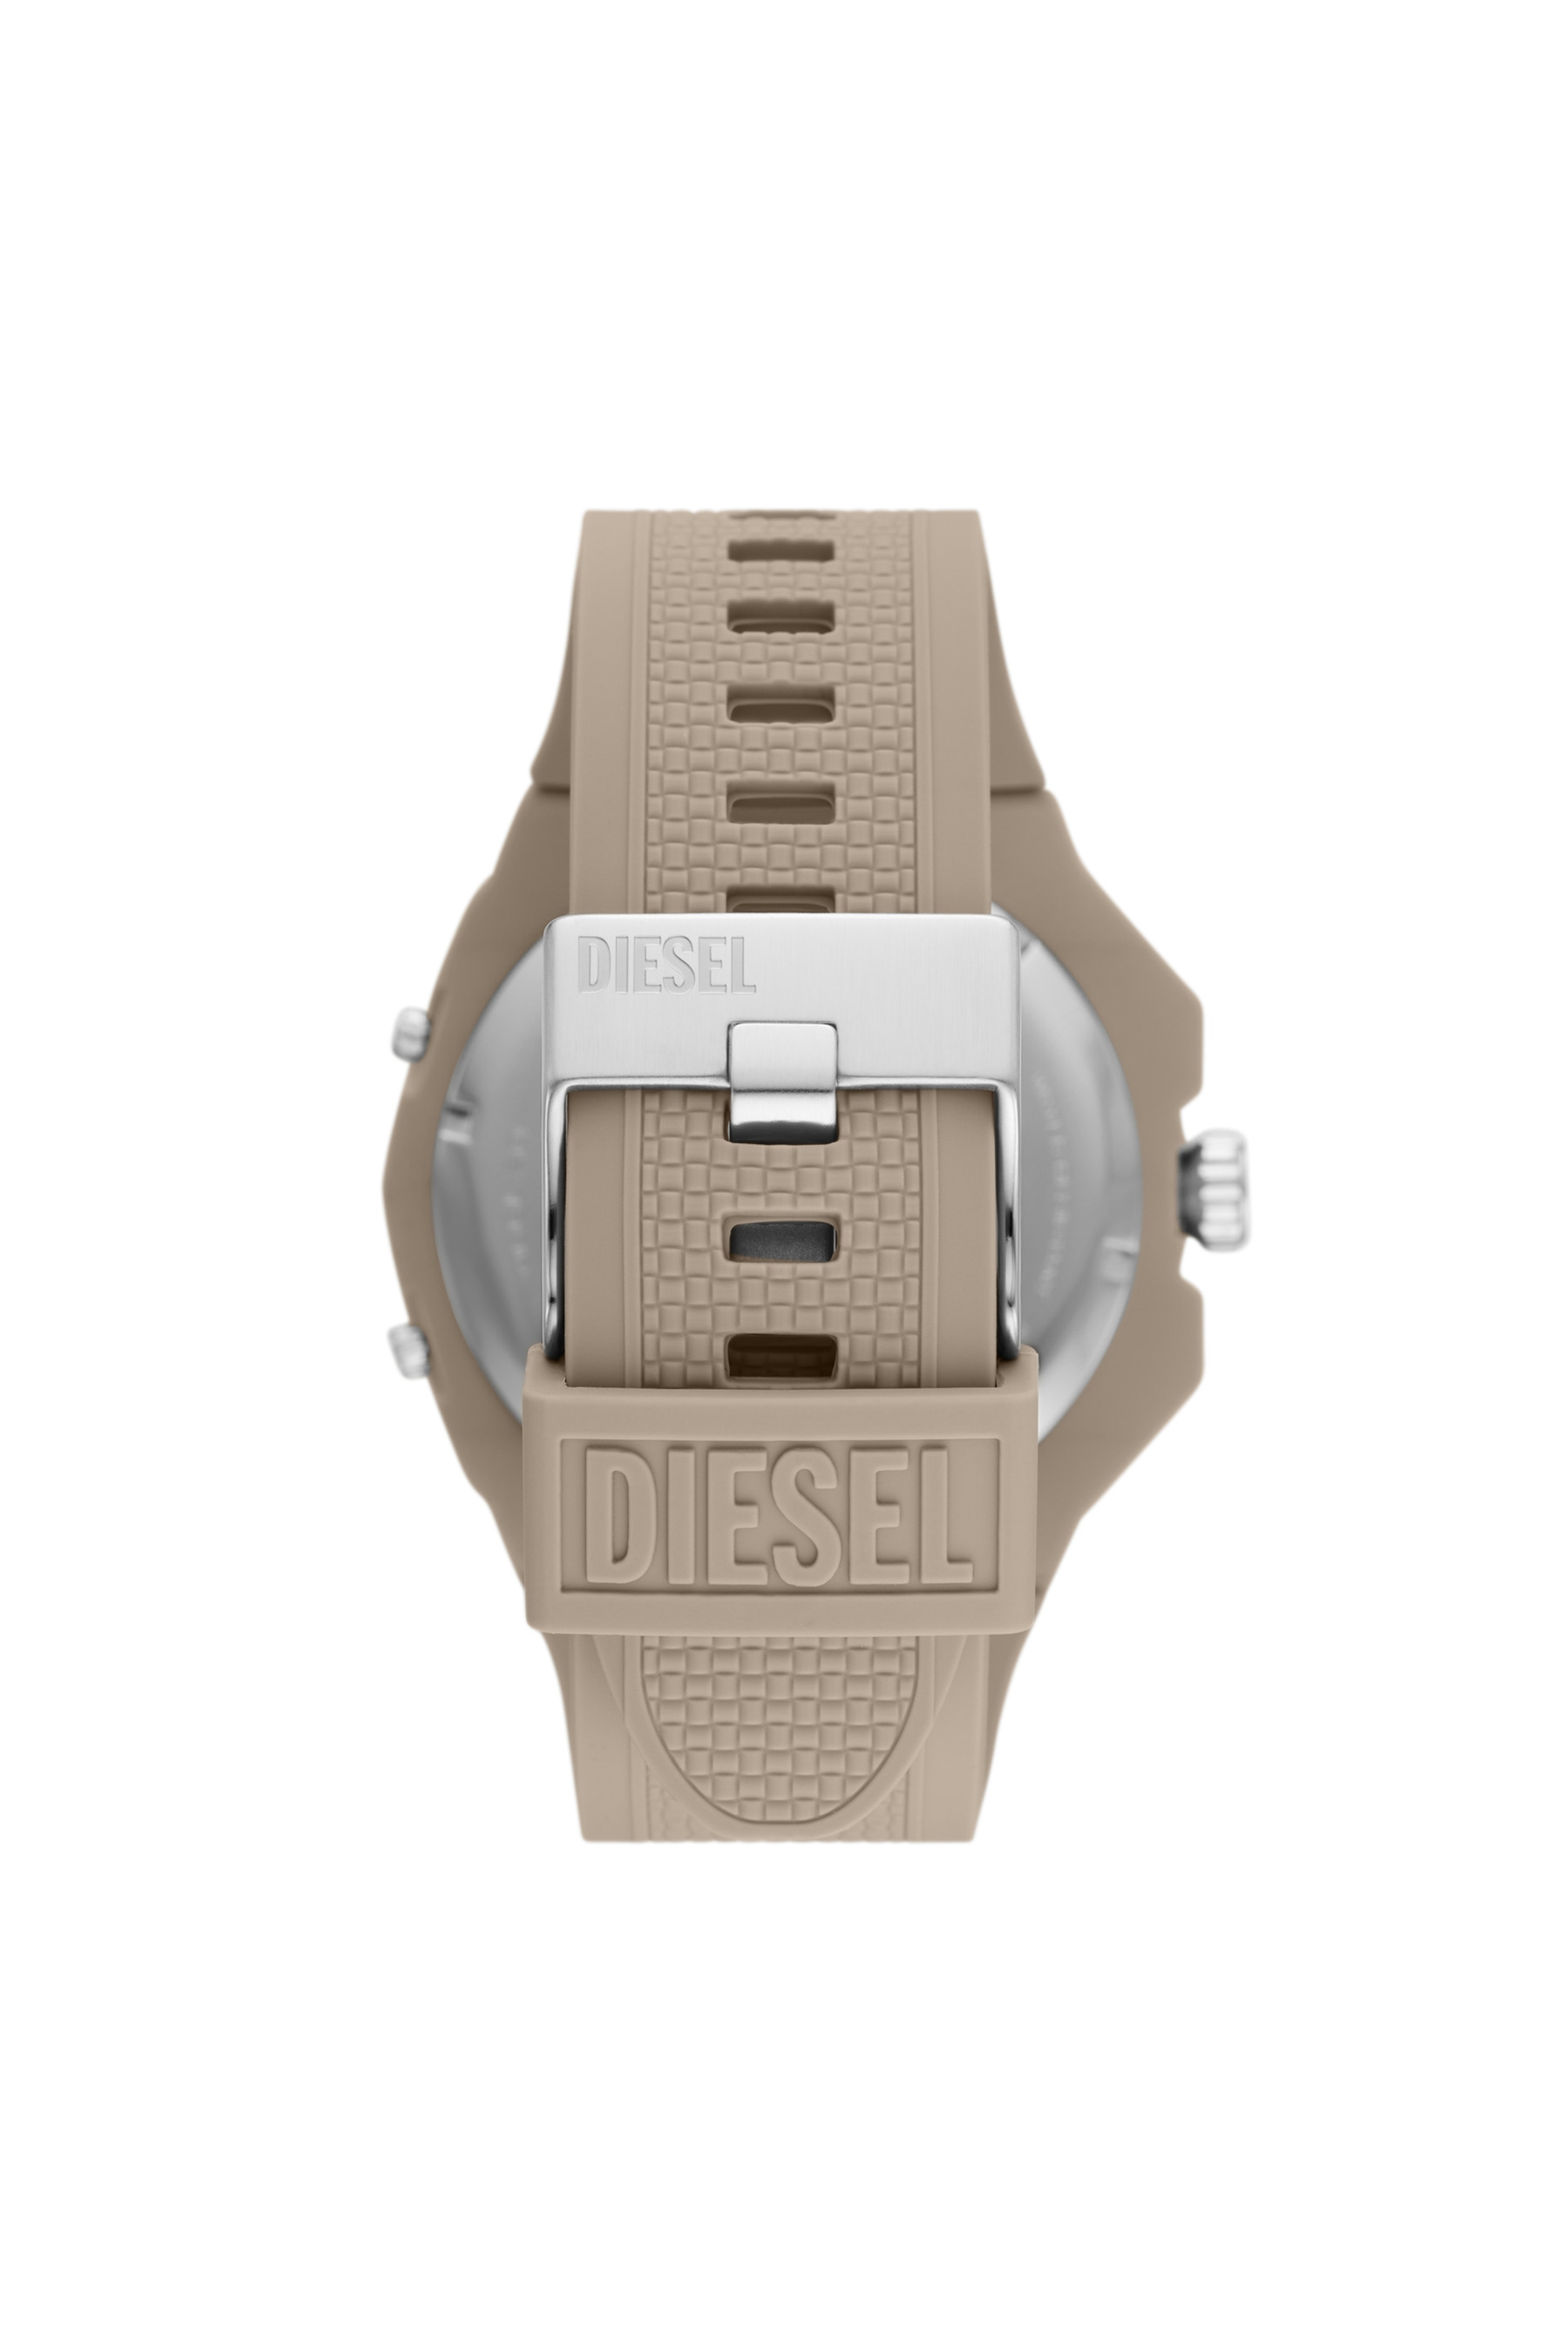 Diesel - DZ1990, ベージュ - Image 2